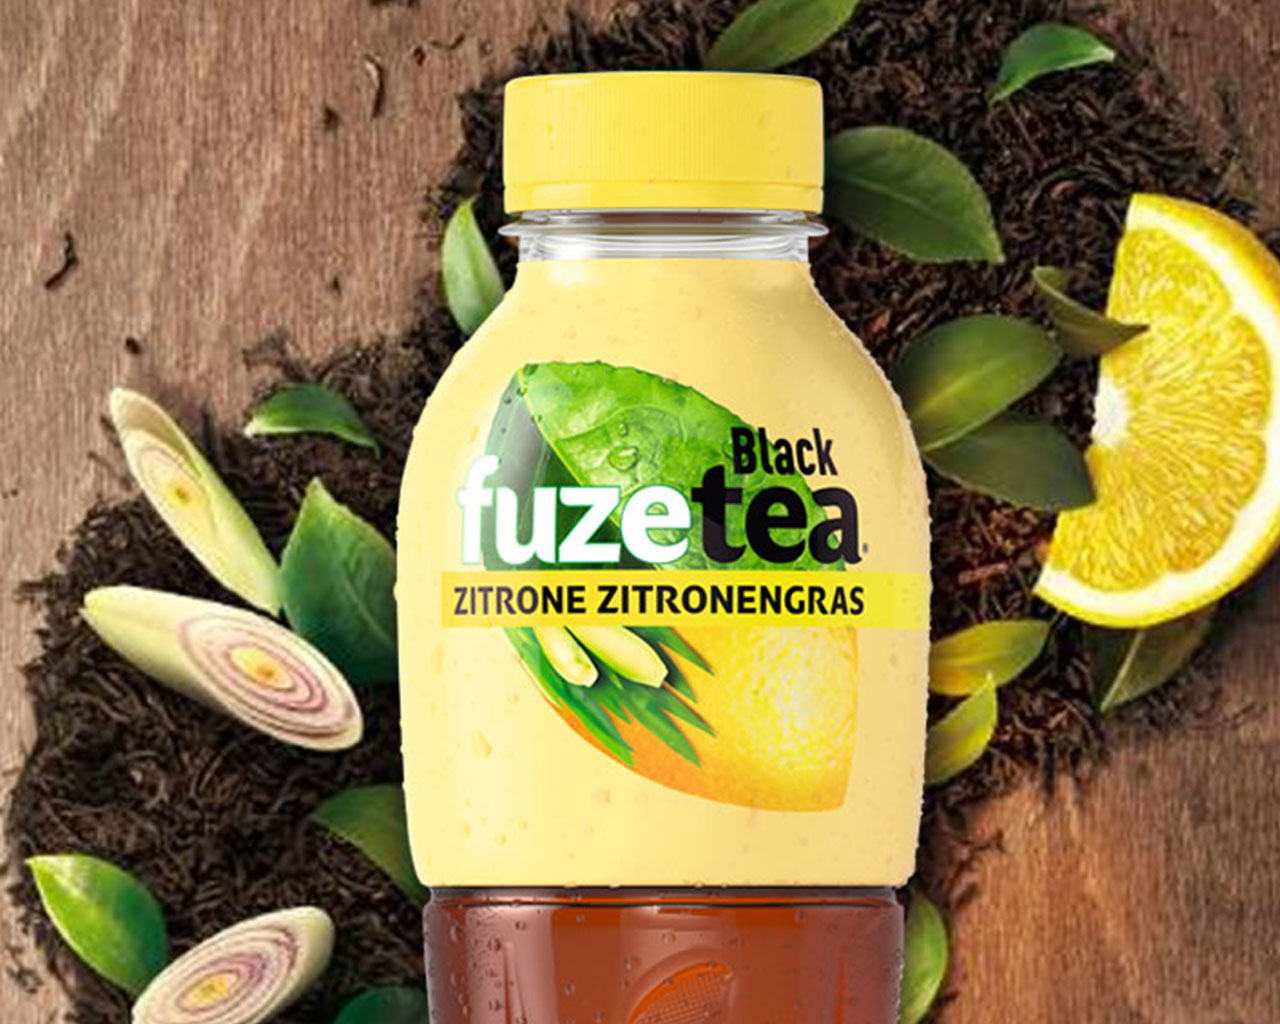 Eine Flasche FuzeTea Schwarzer Tee-Zitrone-Zitronengras, im Hintergrund Zitronenschnitz und Blätter